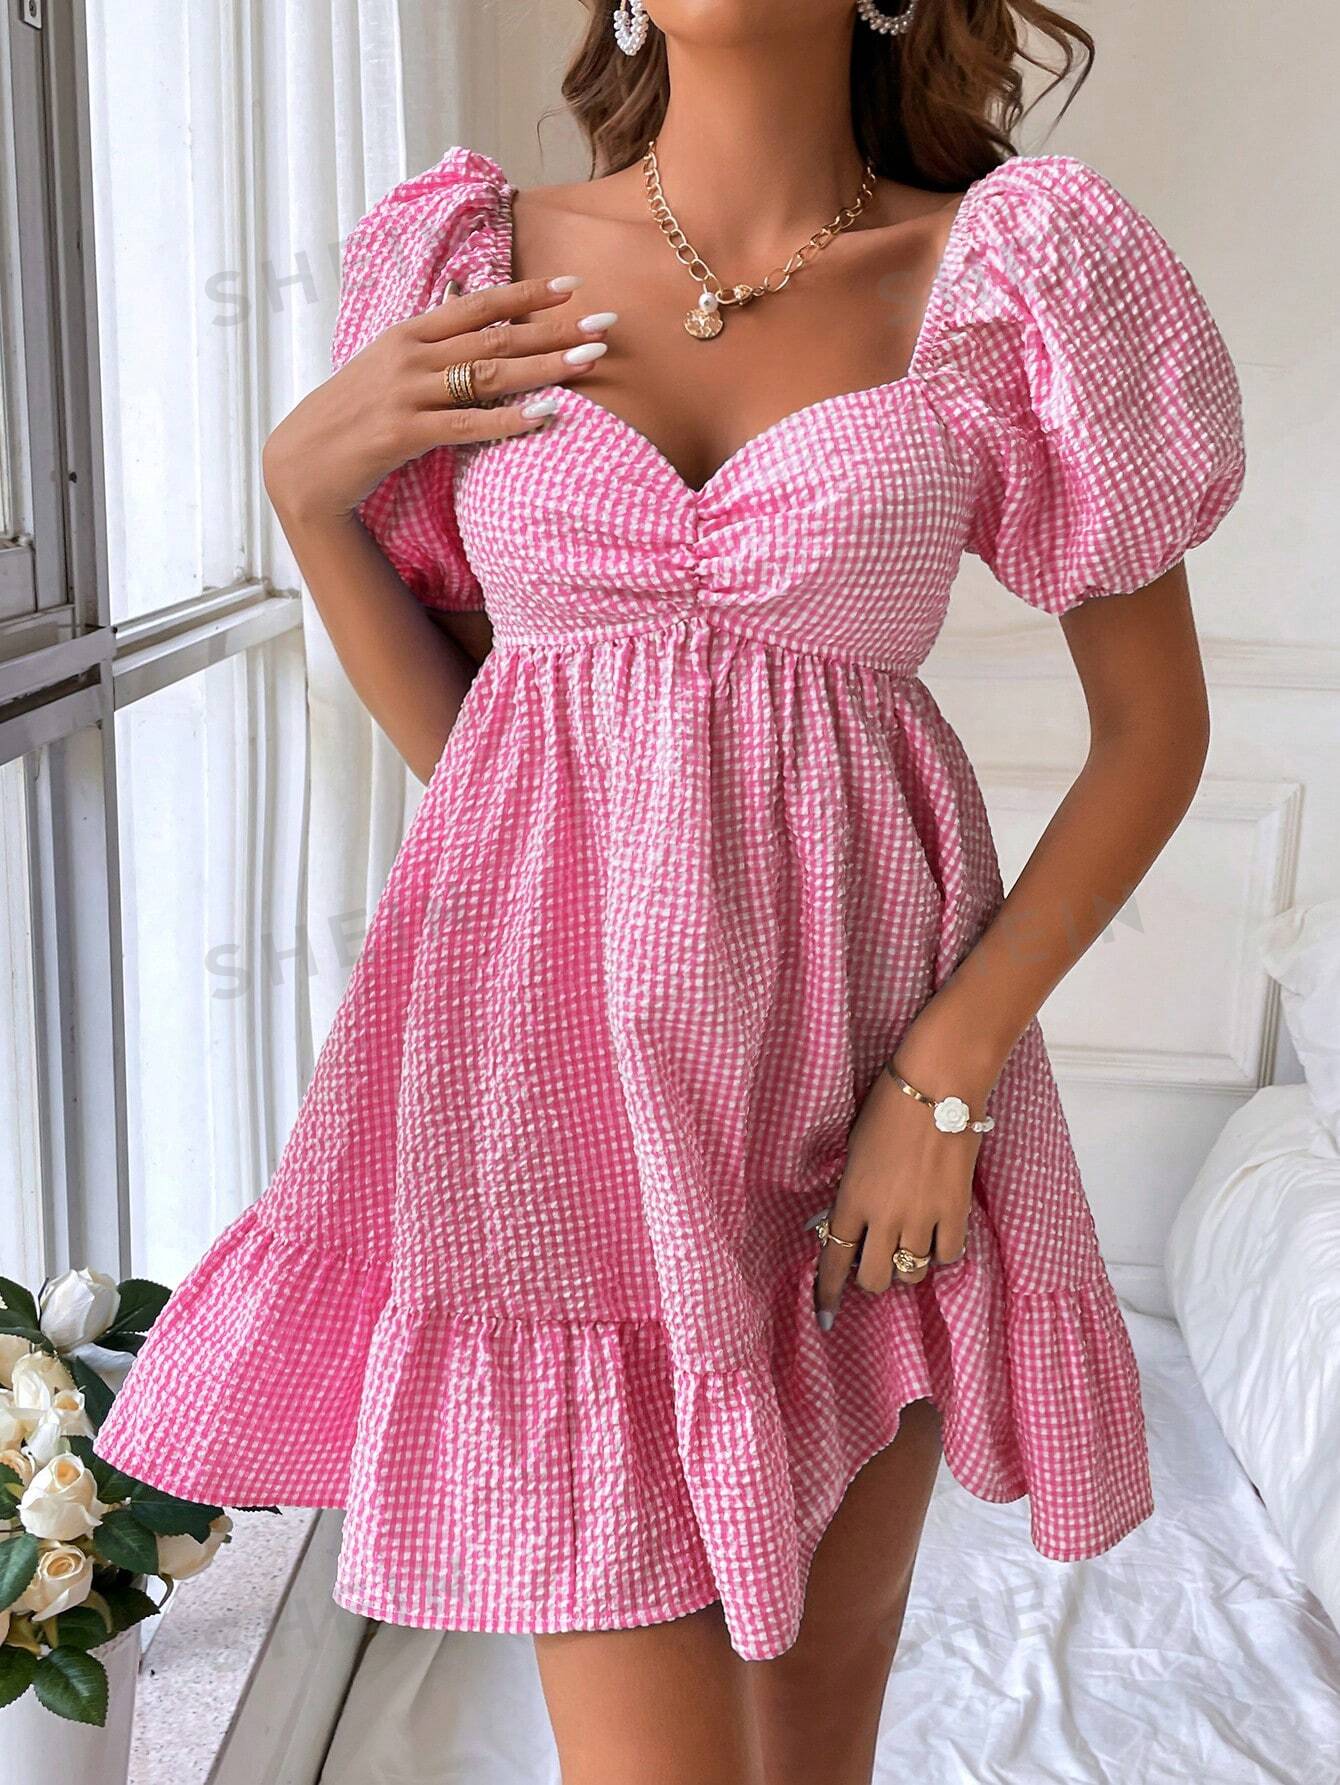 SHEIN WYWH Женское очаровательное платье с объемными рукавами, ярко-розовый